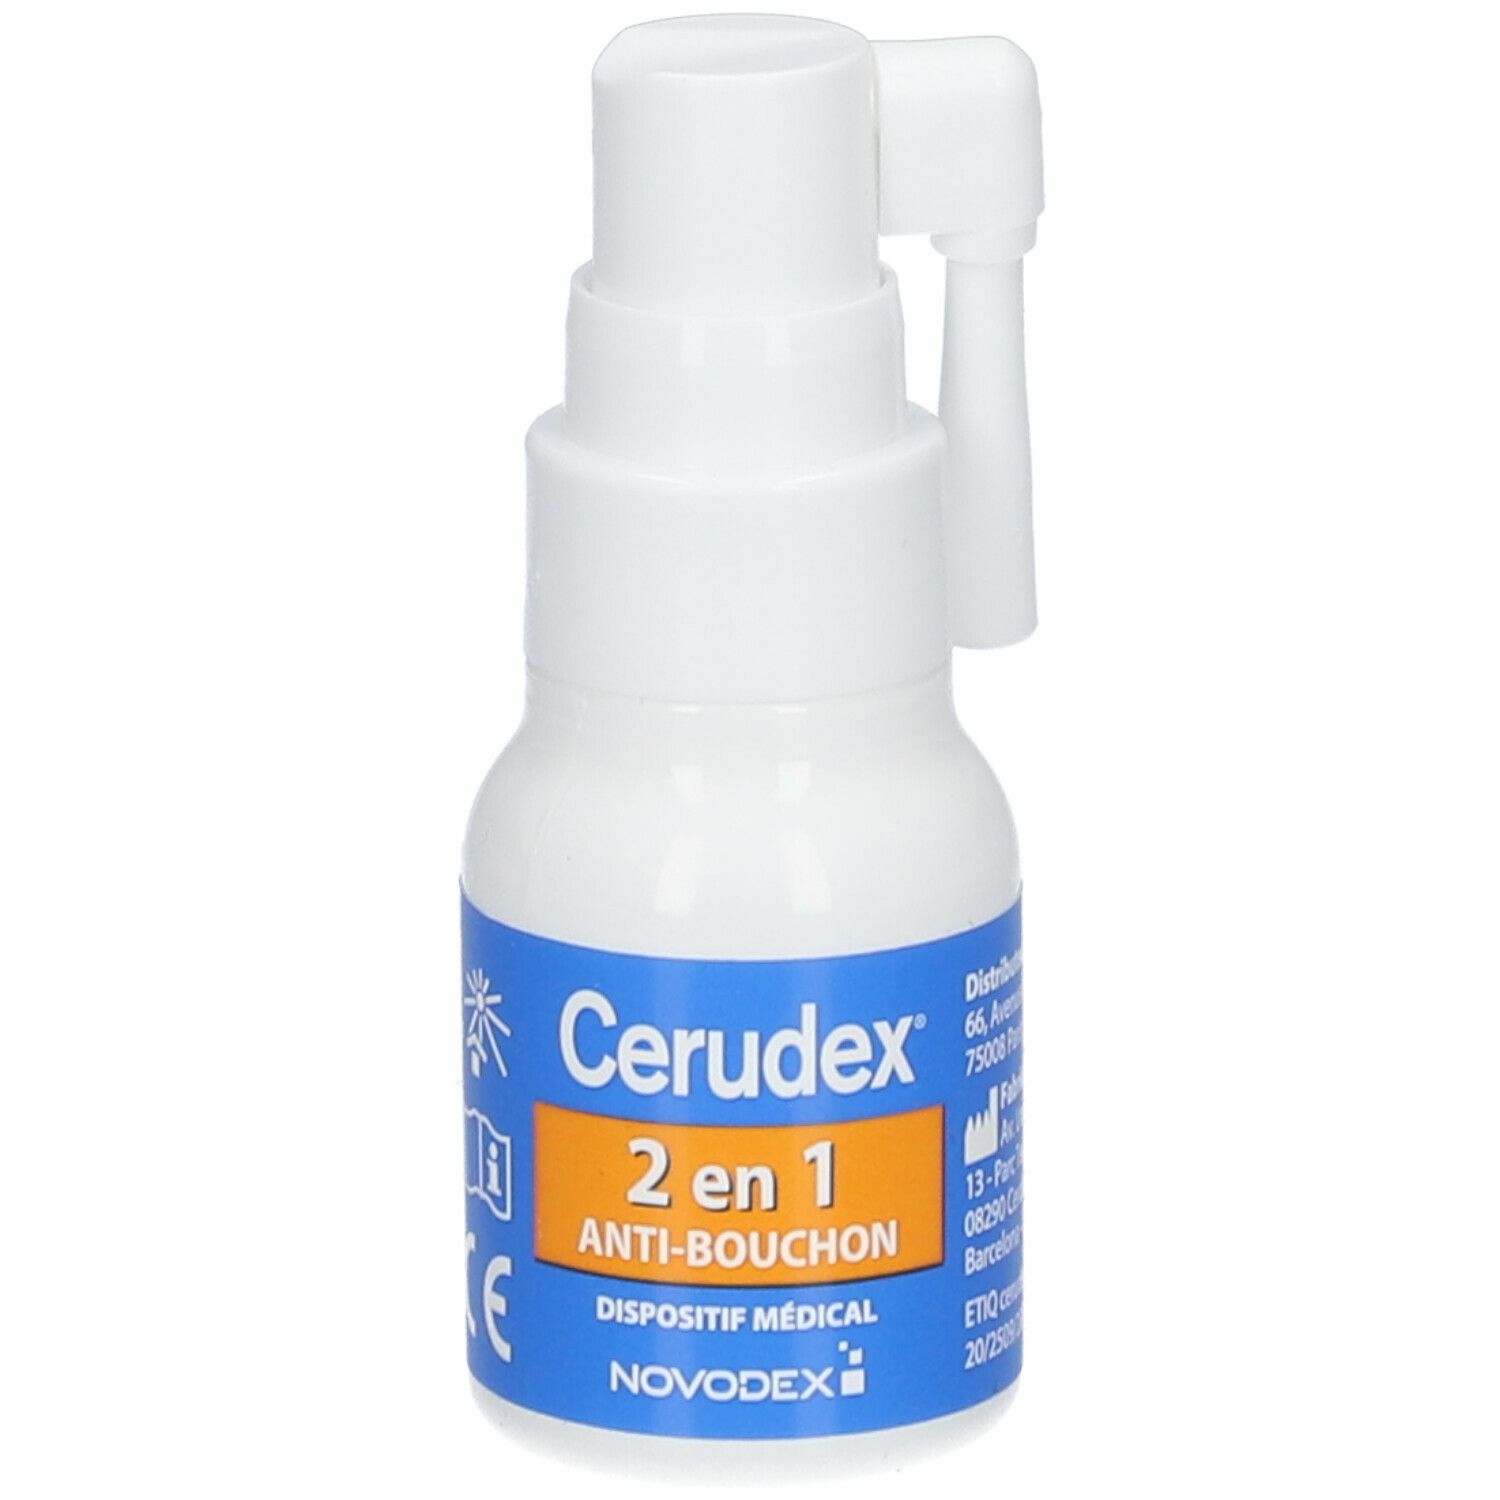 Novodex Cerudex 2 en 1 Anti-Bouchon Spray